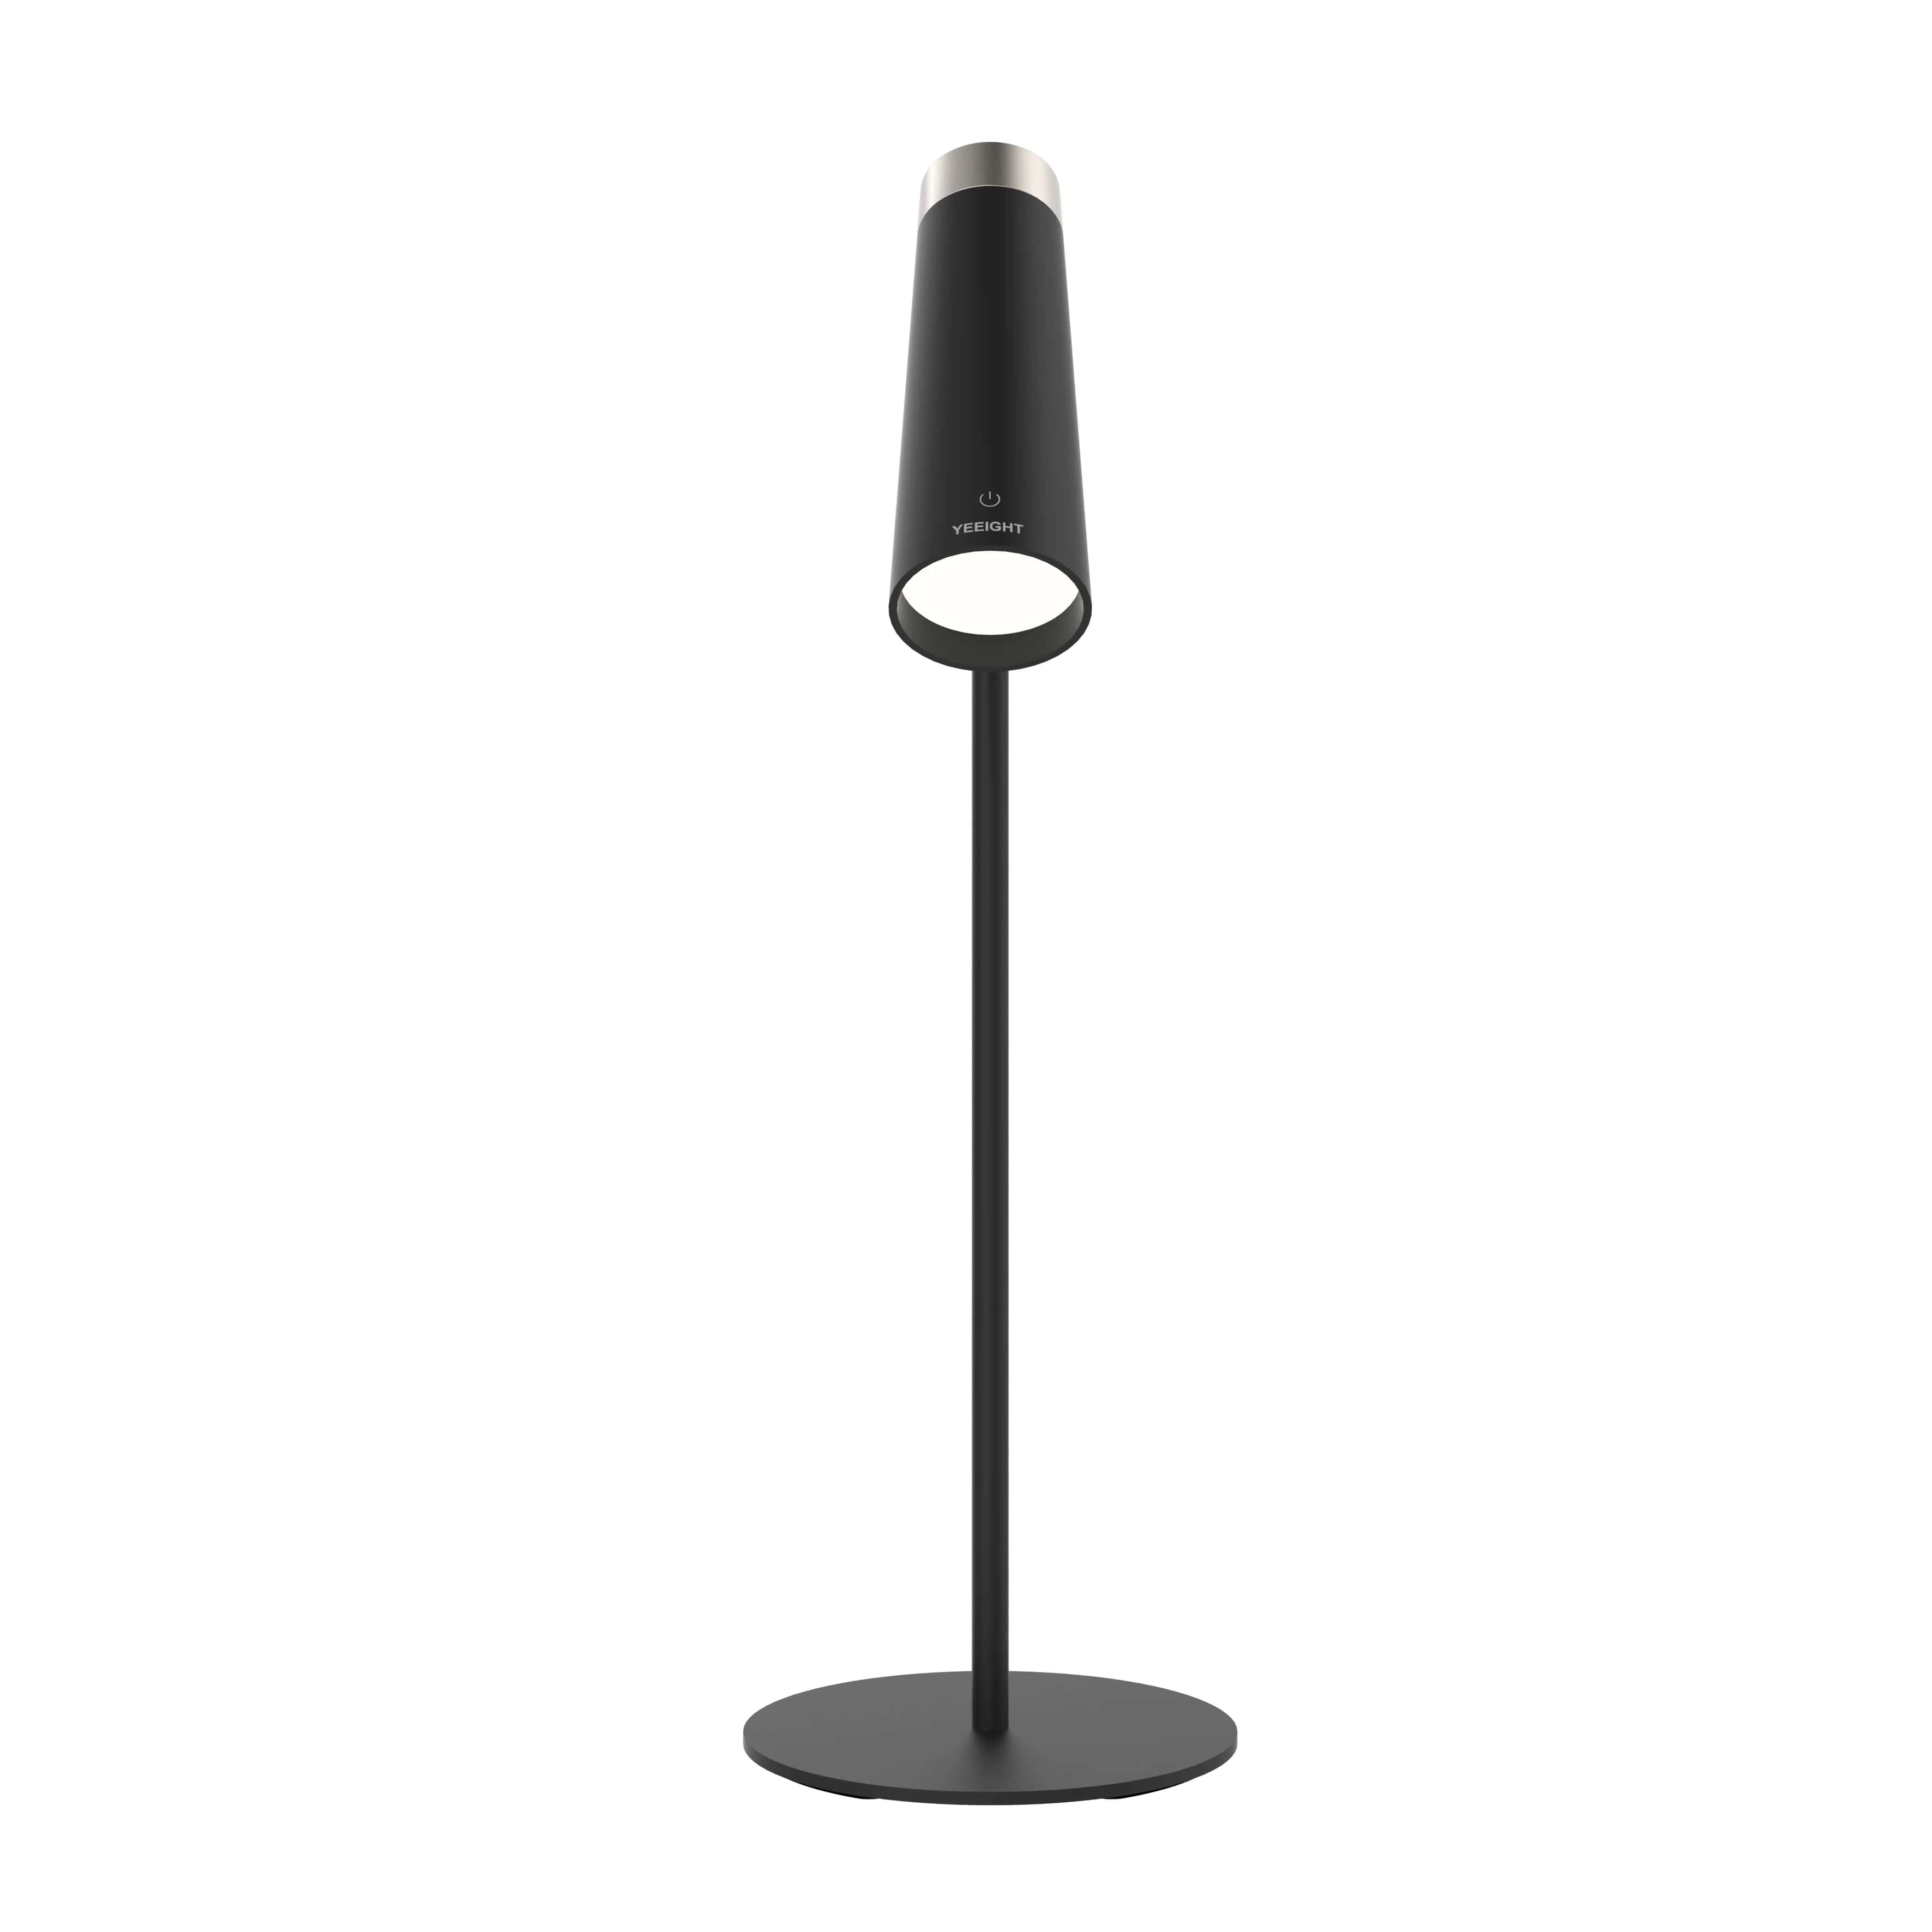 Yeelight 4-in-1 Rechargeable Desk Lamp